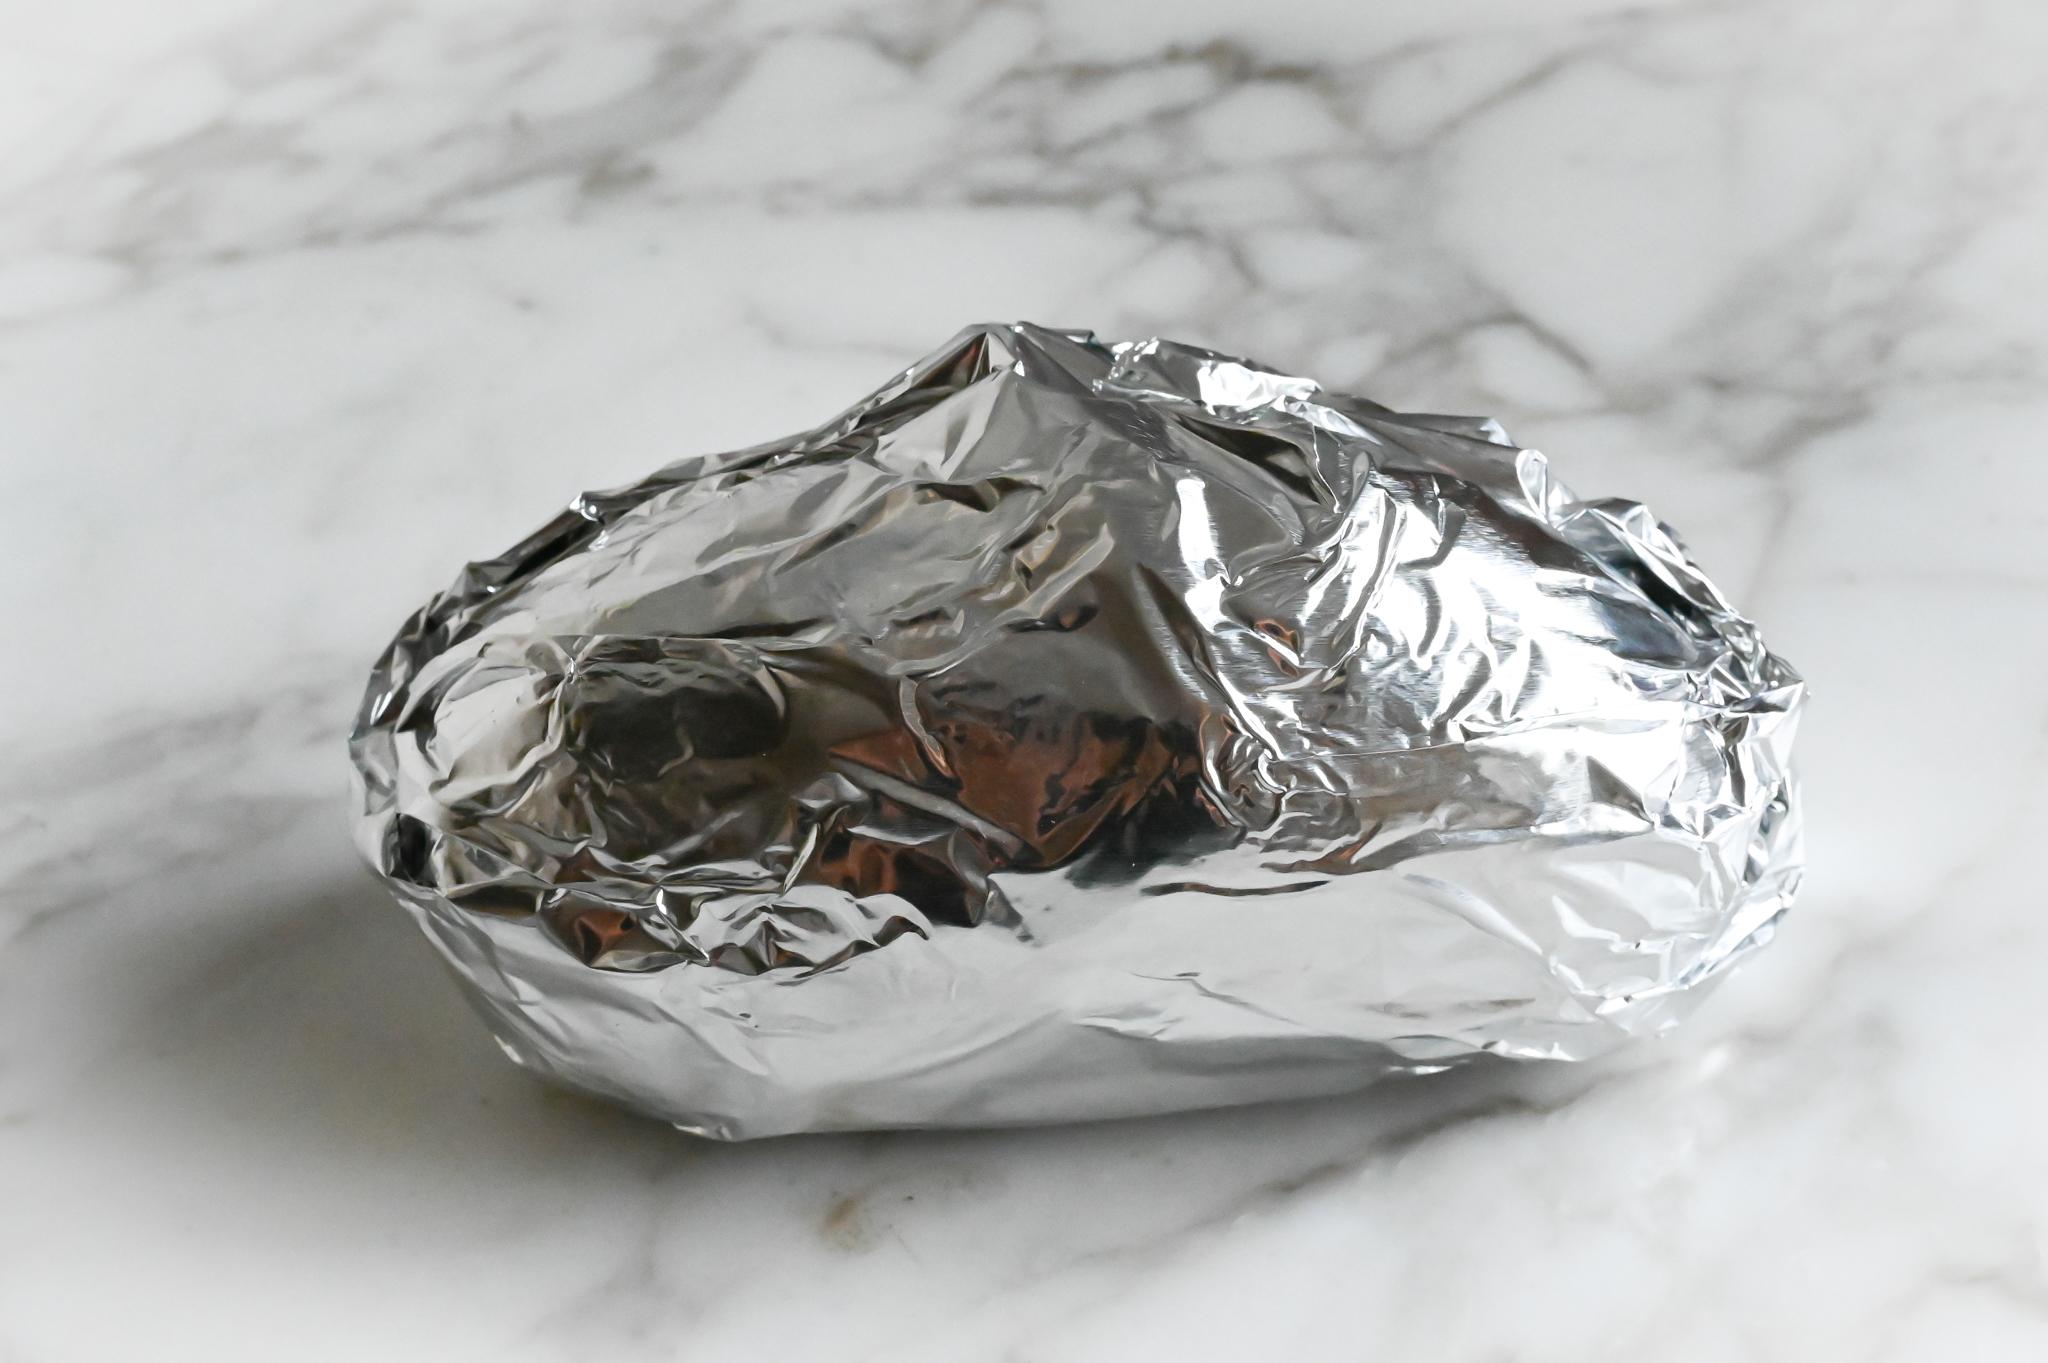 Potato wrapped in foil